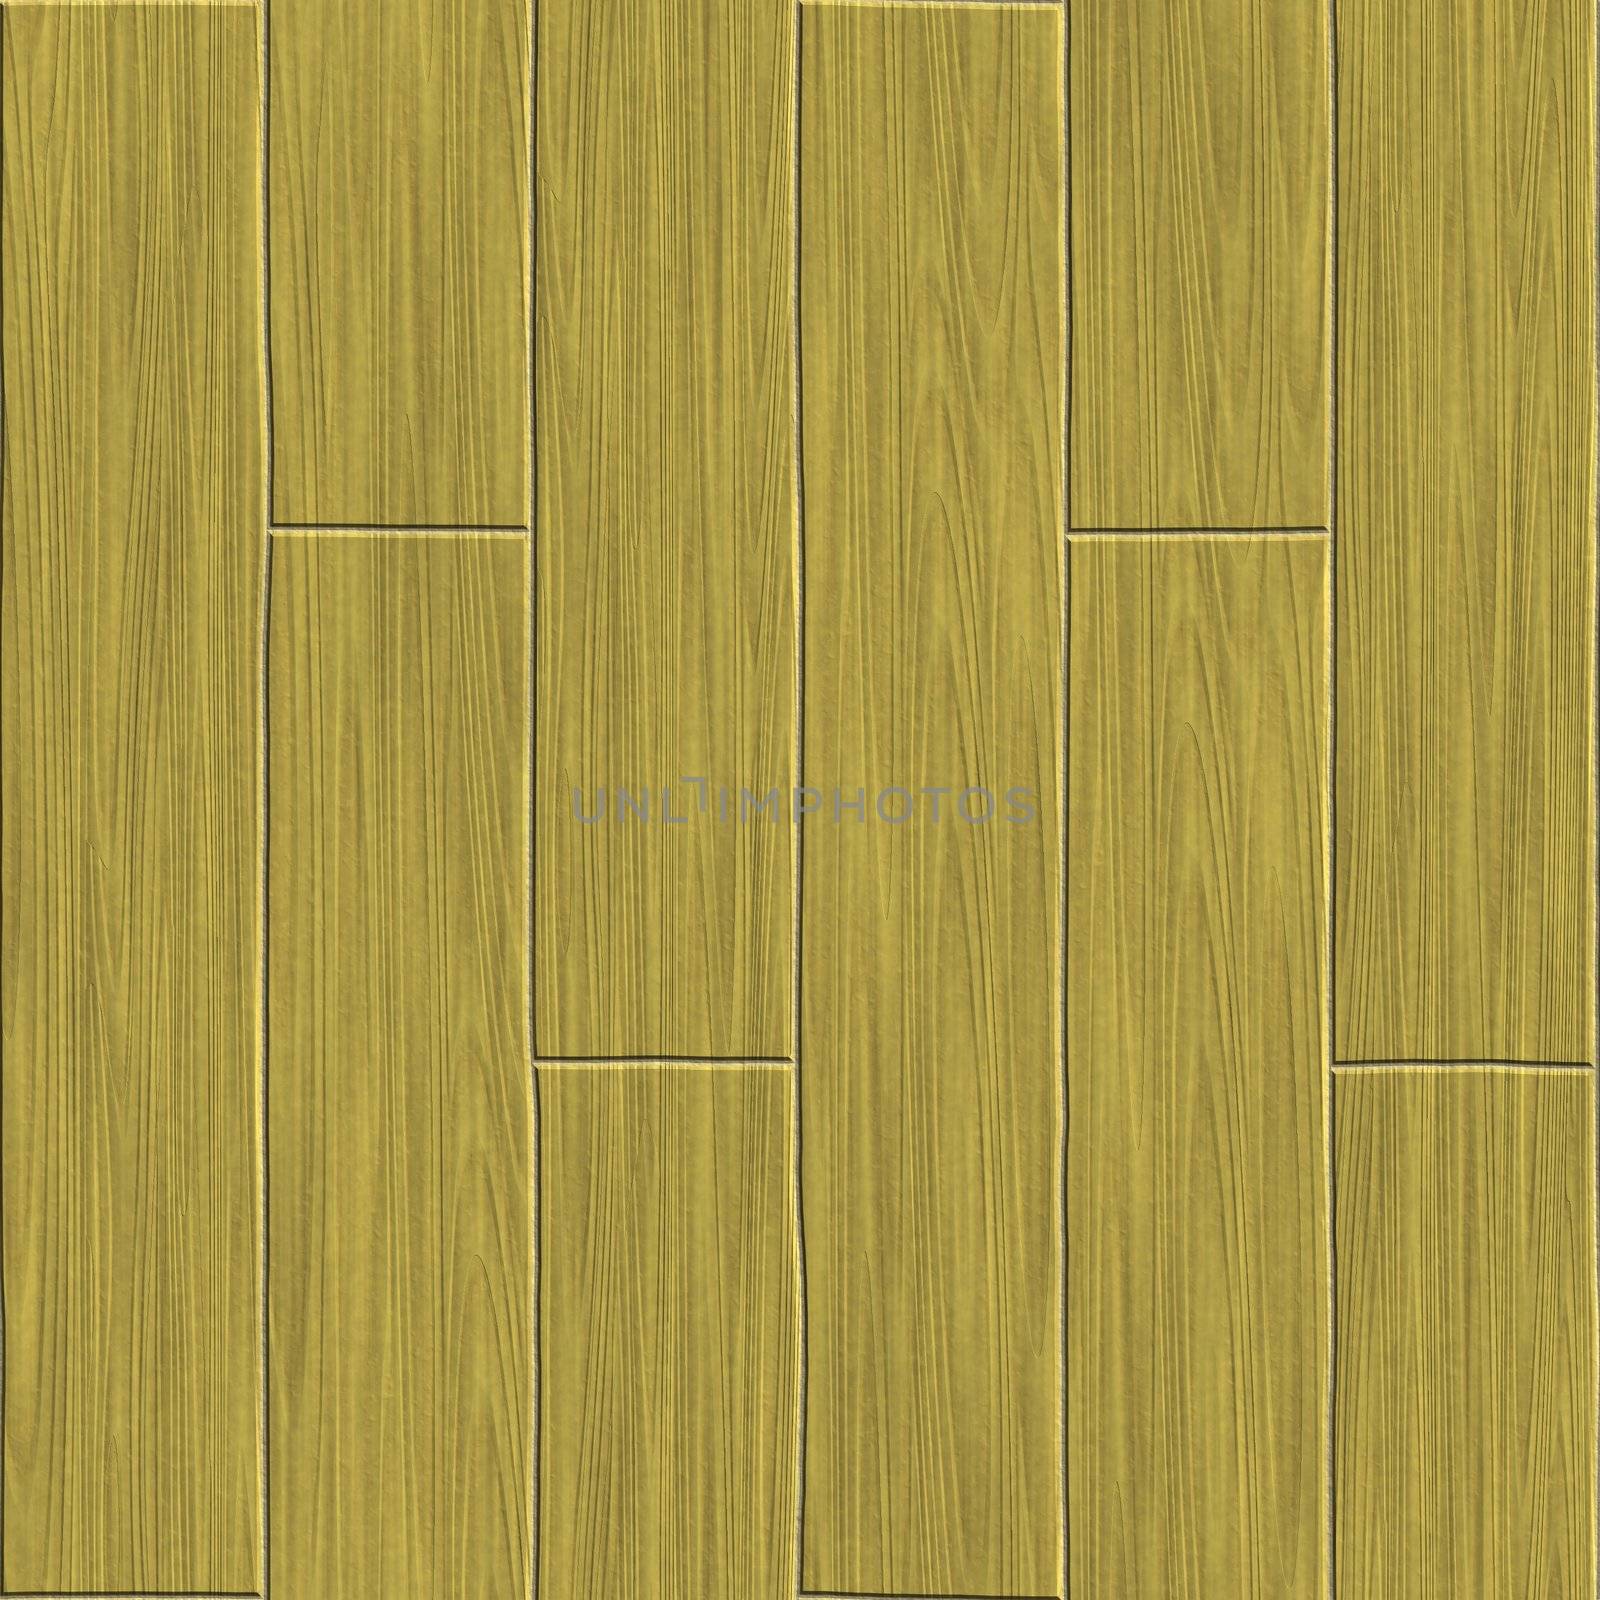 Wood Flooring by kentoh